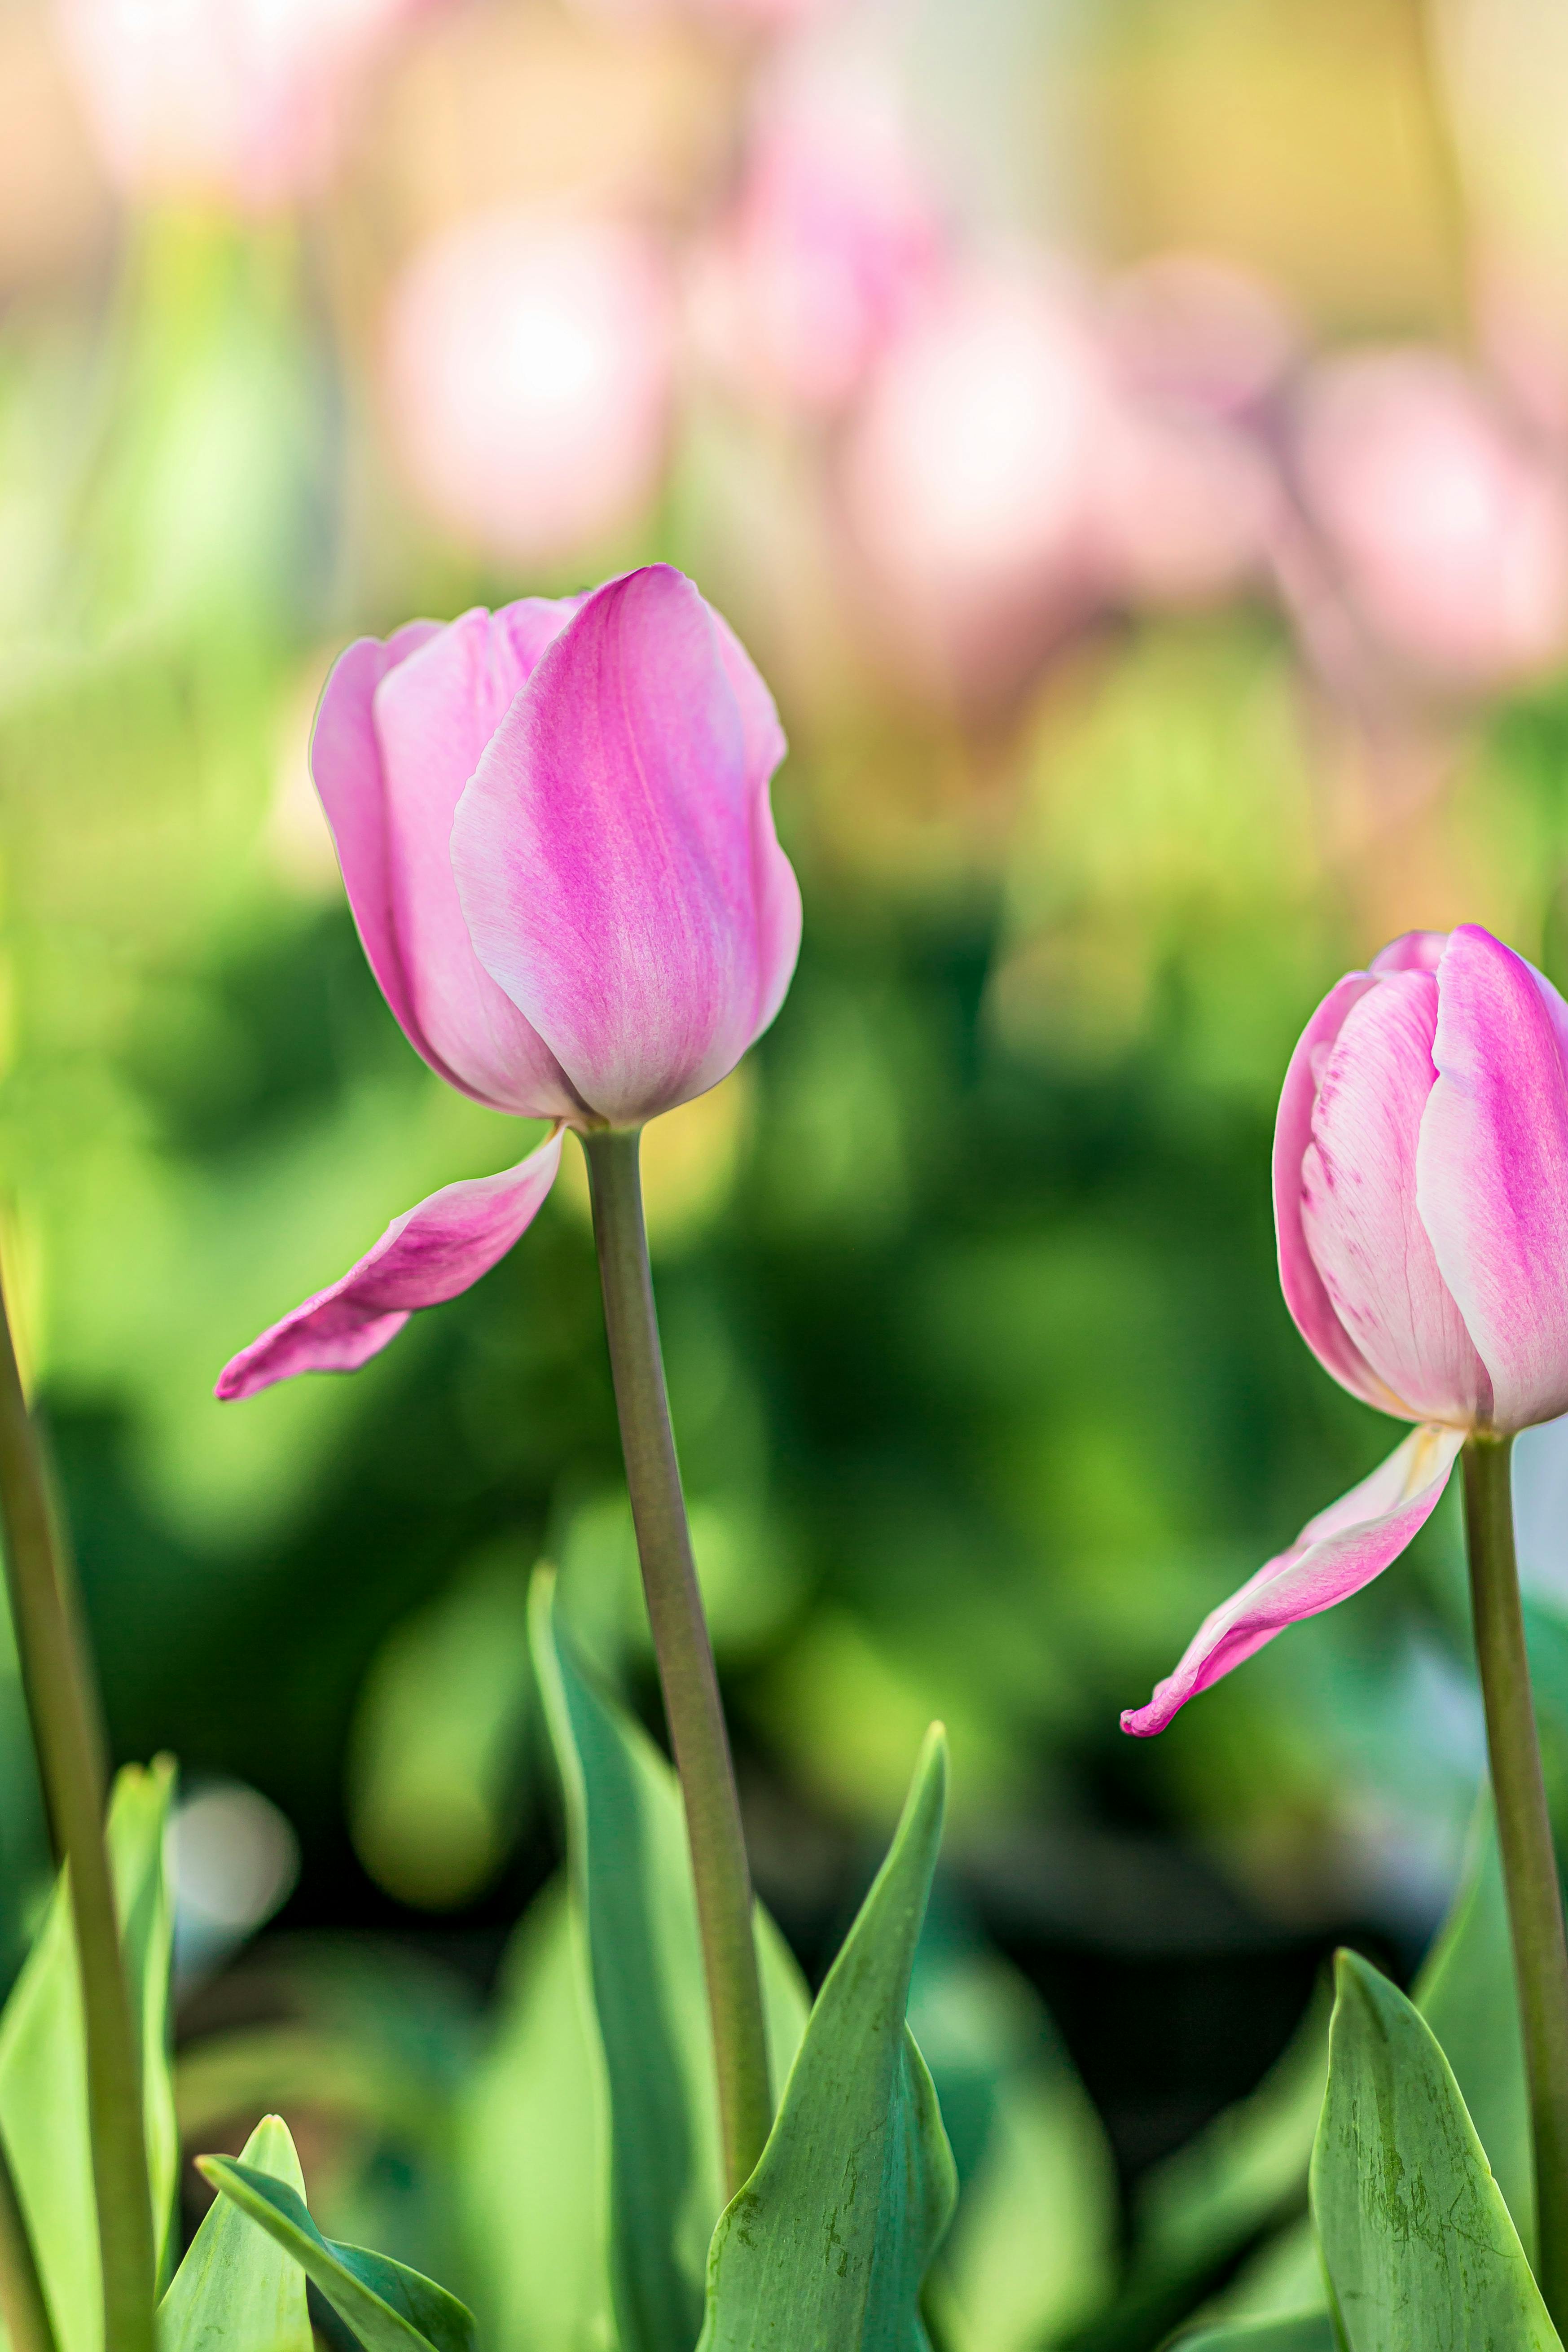 Hoa tulip hồng, những bông hoa hồng xinh đẹp, tươi tắn, nở rộ mang đến cảm giác ngọt ngào và thư giãn cho bạn. Với một dải màu hồng tươi trên nền trắng, những bông hoa này giúp bạn cảm nhận được sự ấm áp và yên bình trong bức ảnh của mình.